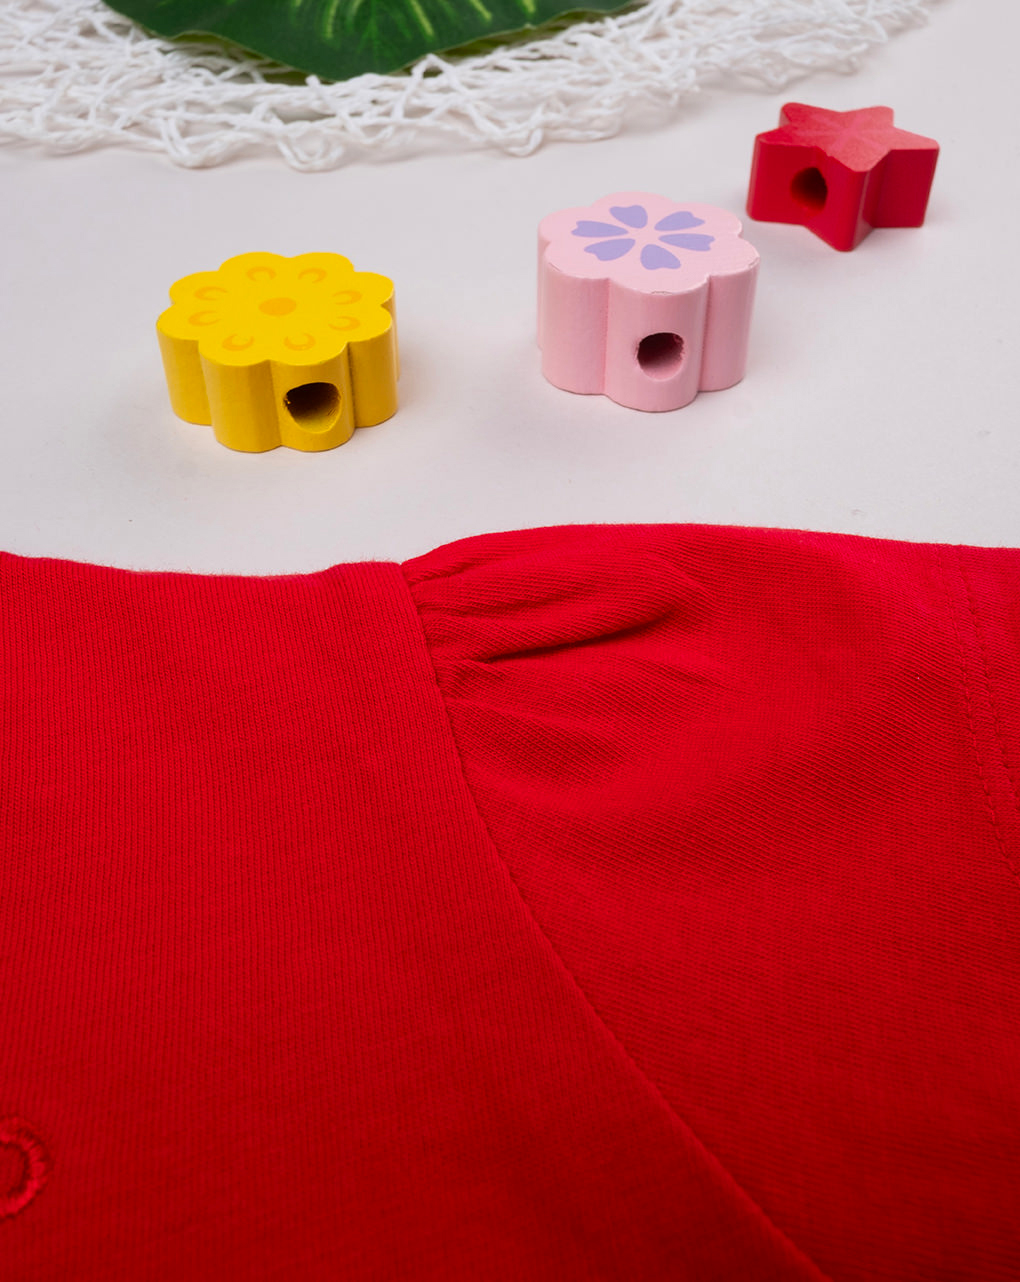 βρεφικό t-shirt κόκκινο basic "άπειρο" για κορίτσι - Prénatal